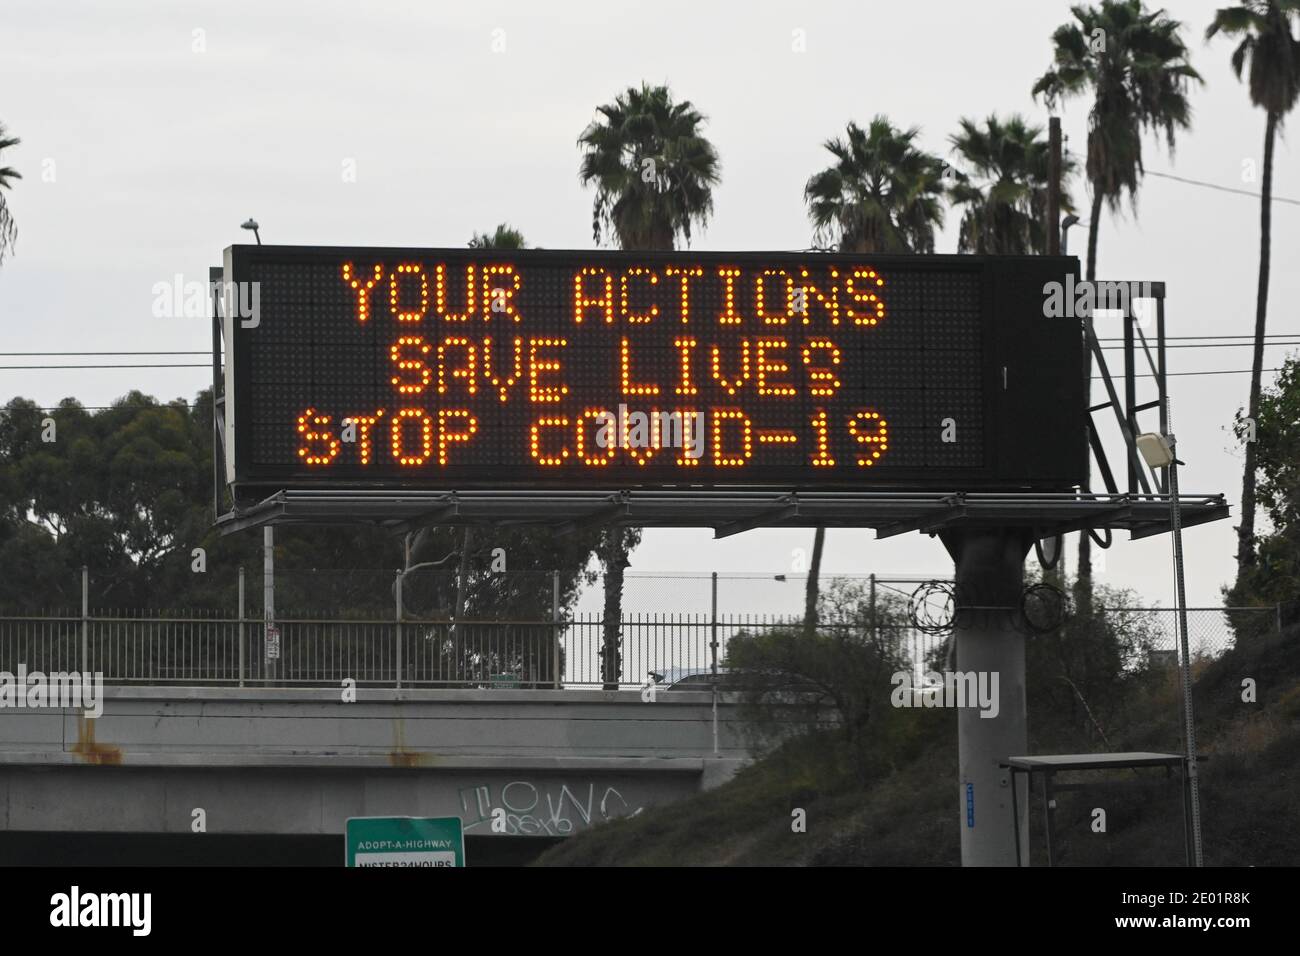 Eine Caltrans-Tafel mit den Worten „Your Actions Save Lives Stop COVID-19“ wird am Donnerstag, den 24. Dezember 202, inmitten der globalen Coronavirus-Pandemie gesehen Stockfoto